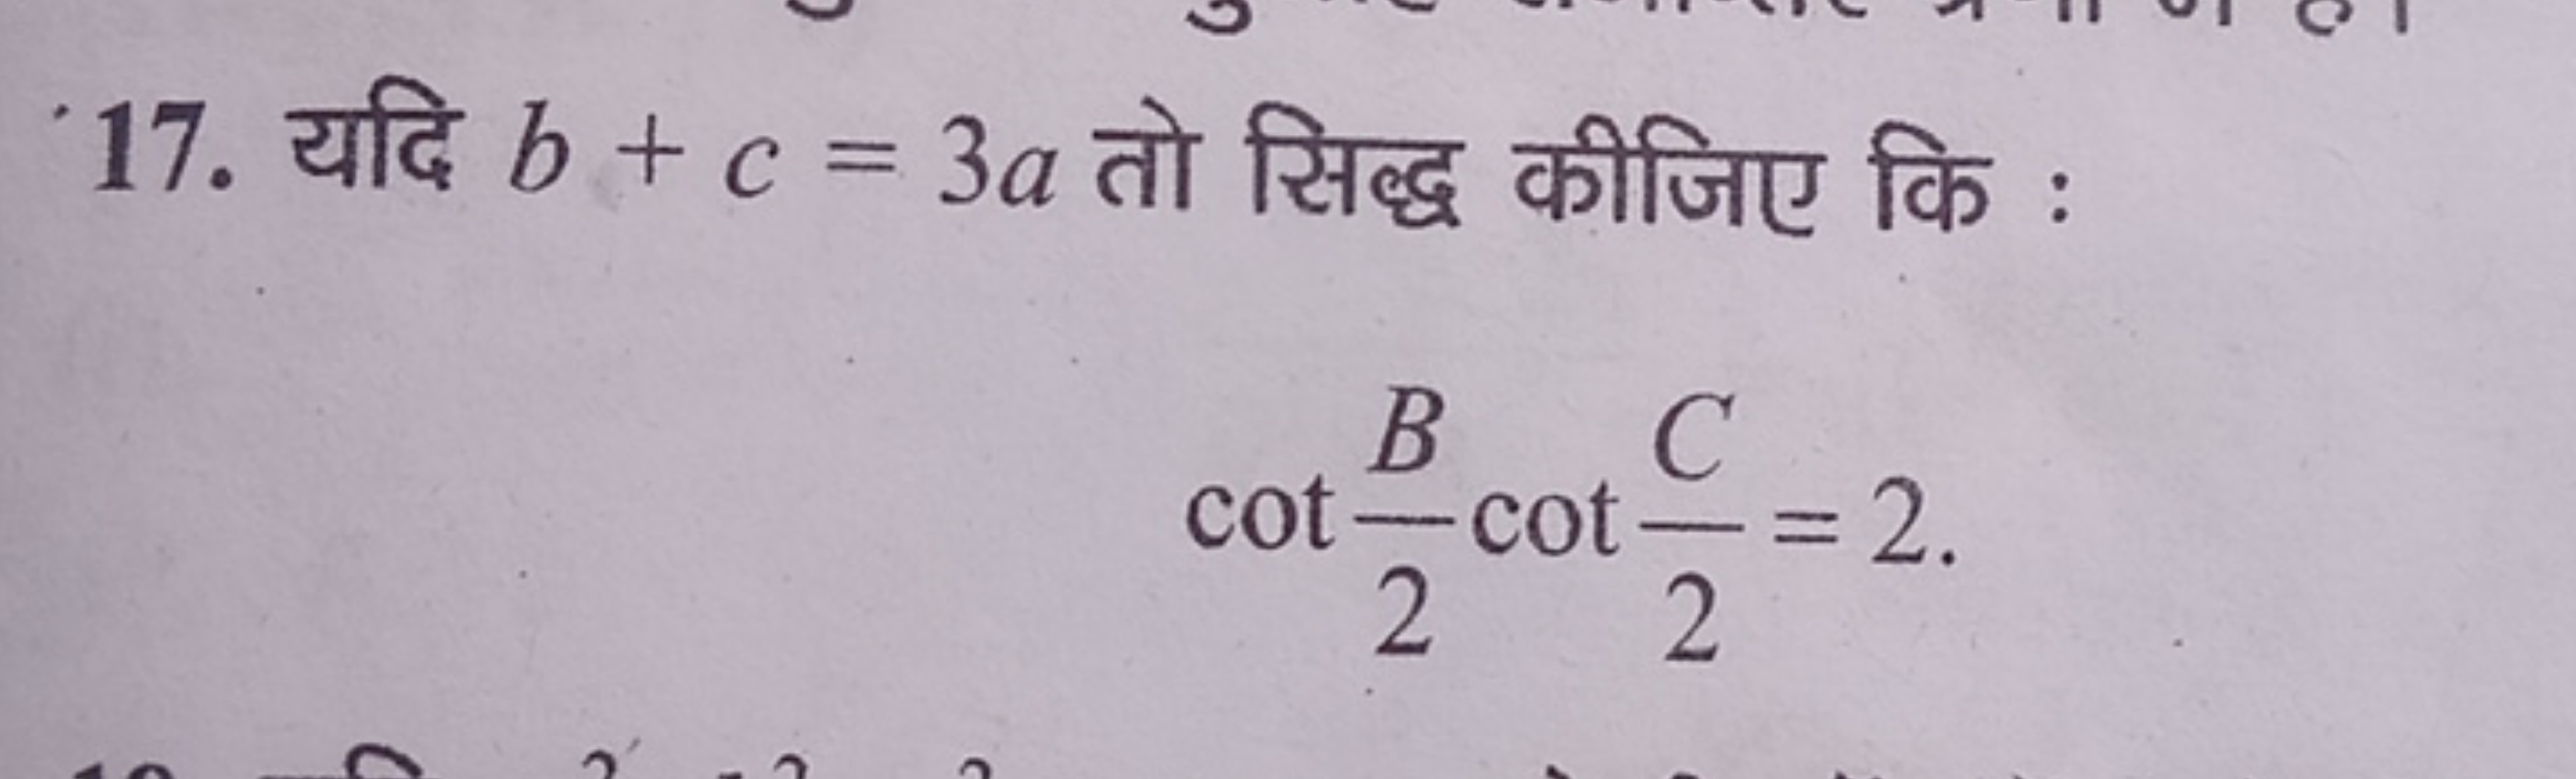 17. यदि b+c=3a तो सिद्ध कीजिए कि :
cot2B​cot2C​=2. 